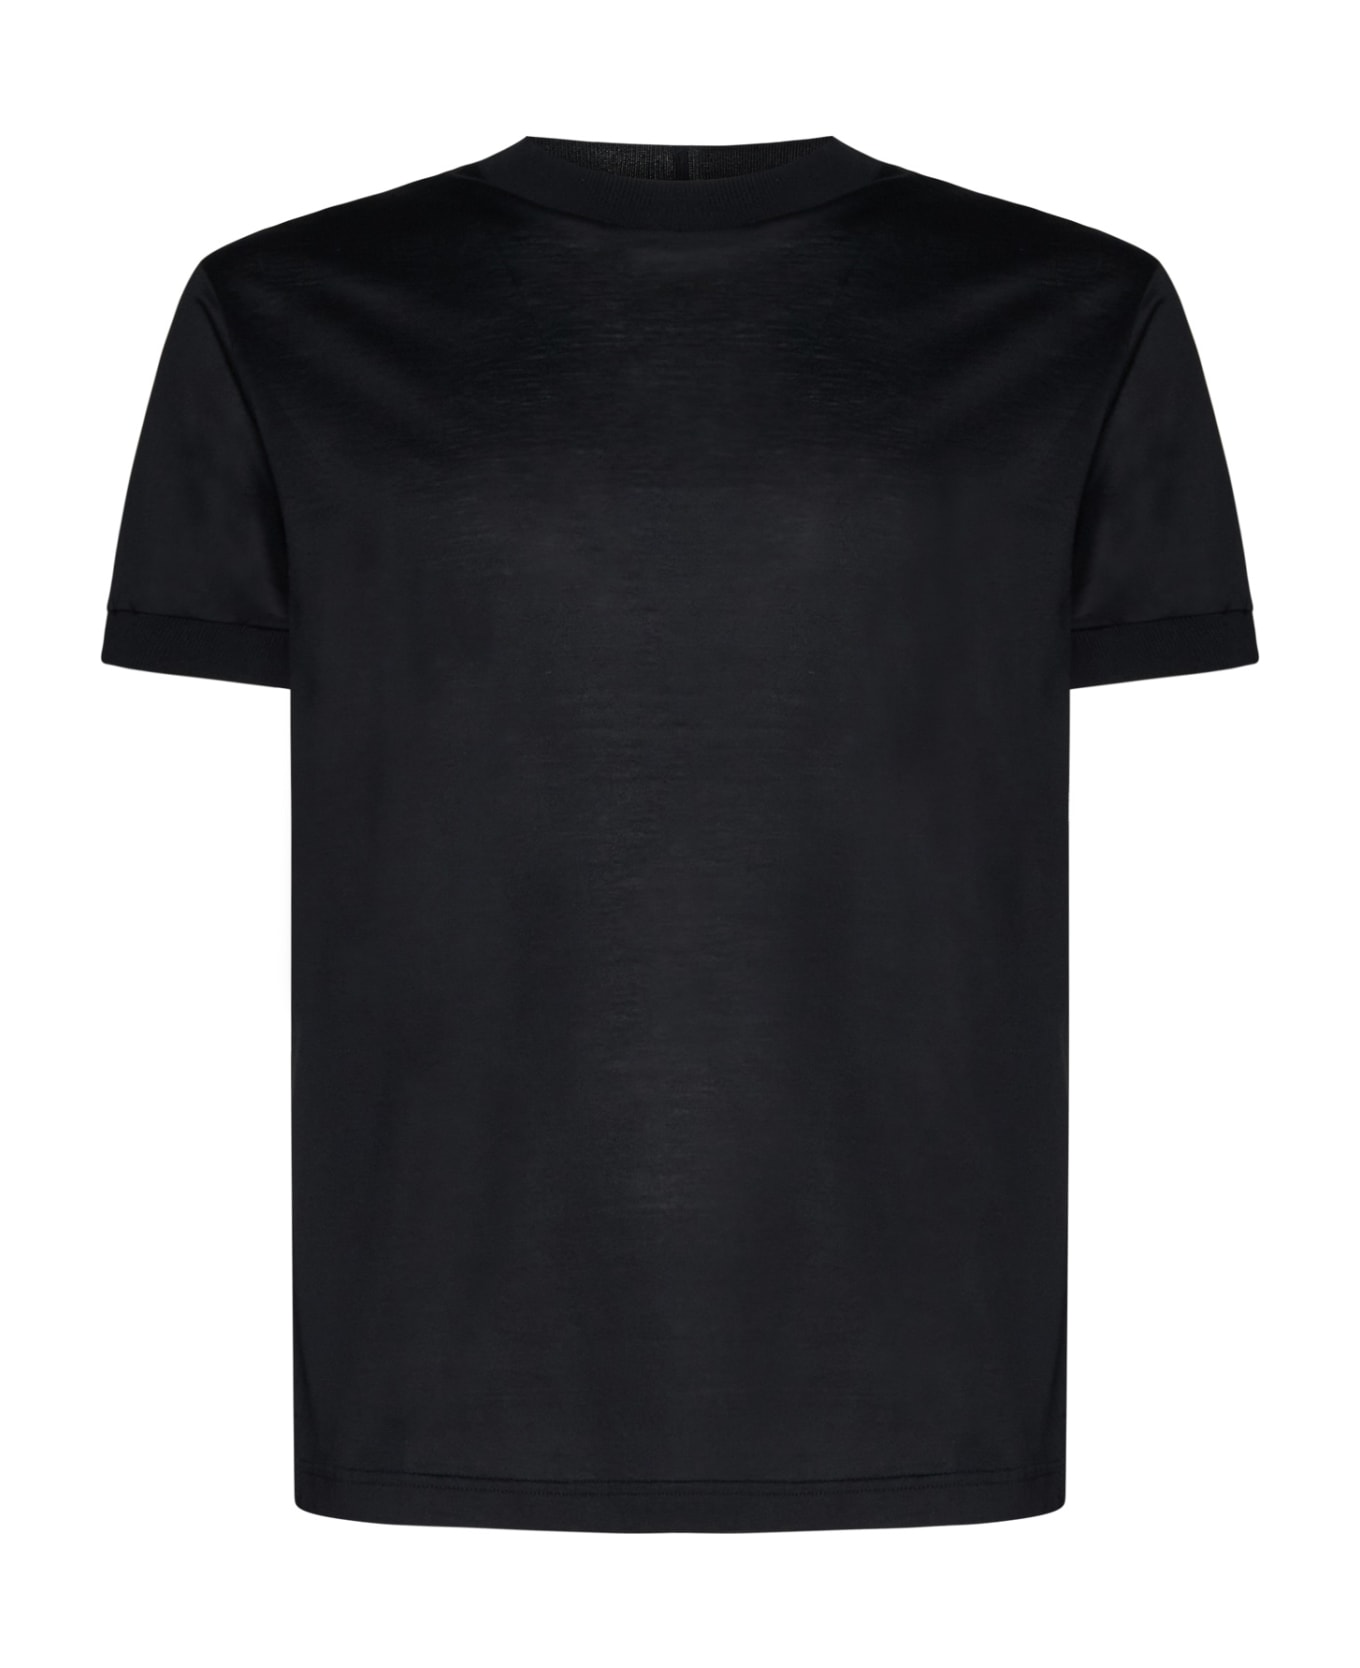 Tagliatore Lisle Cotton T-shirt - Nero シャツ